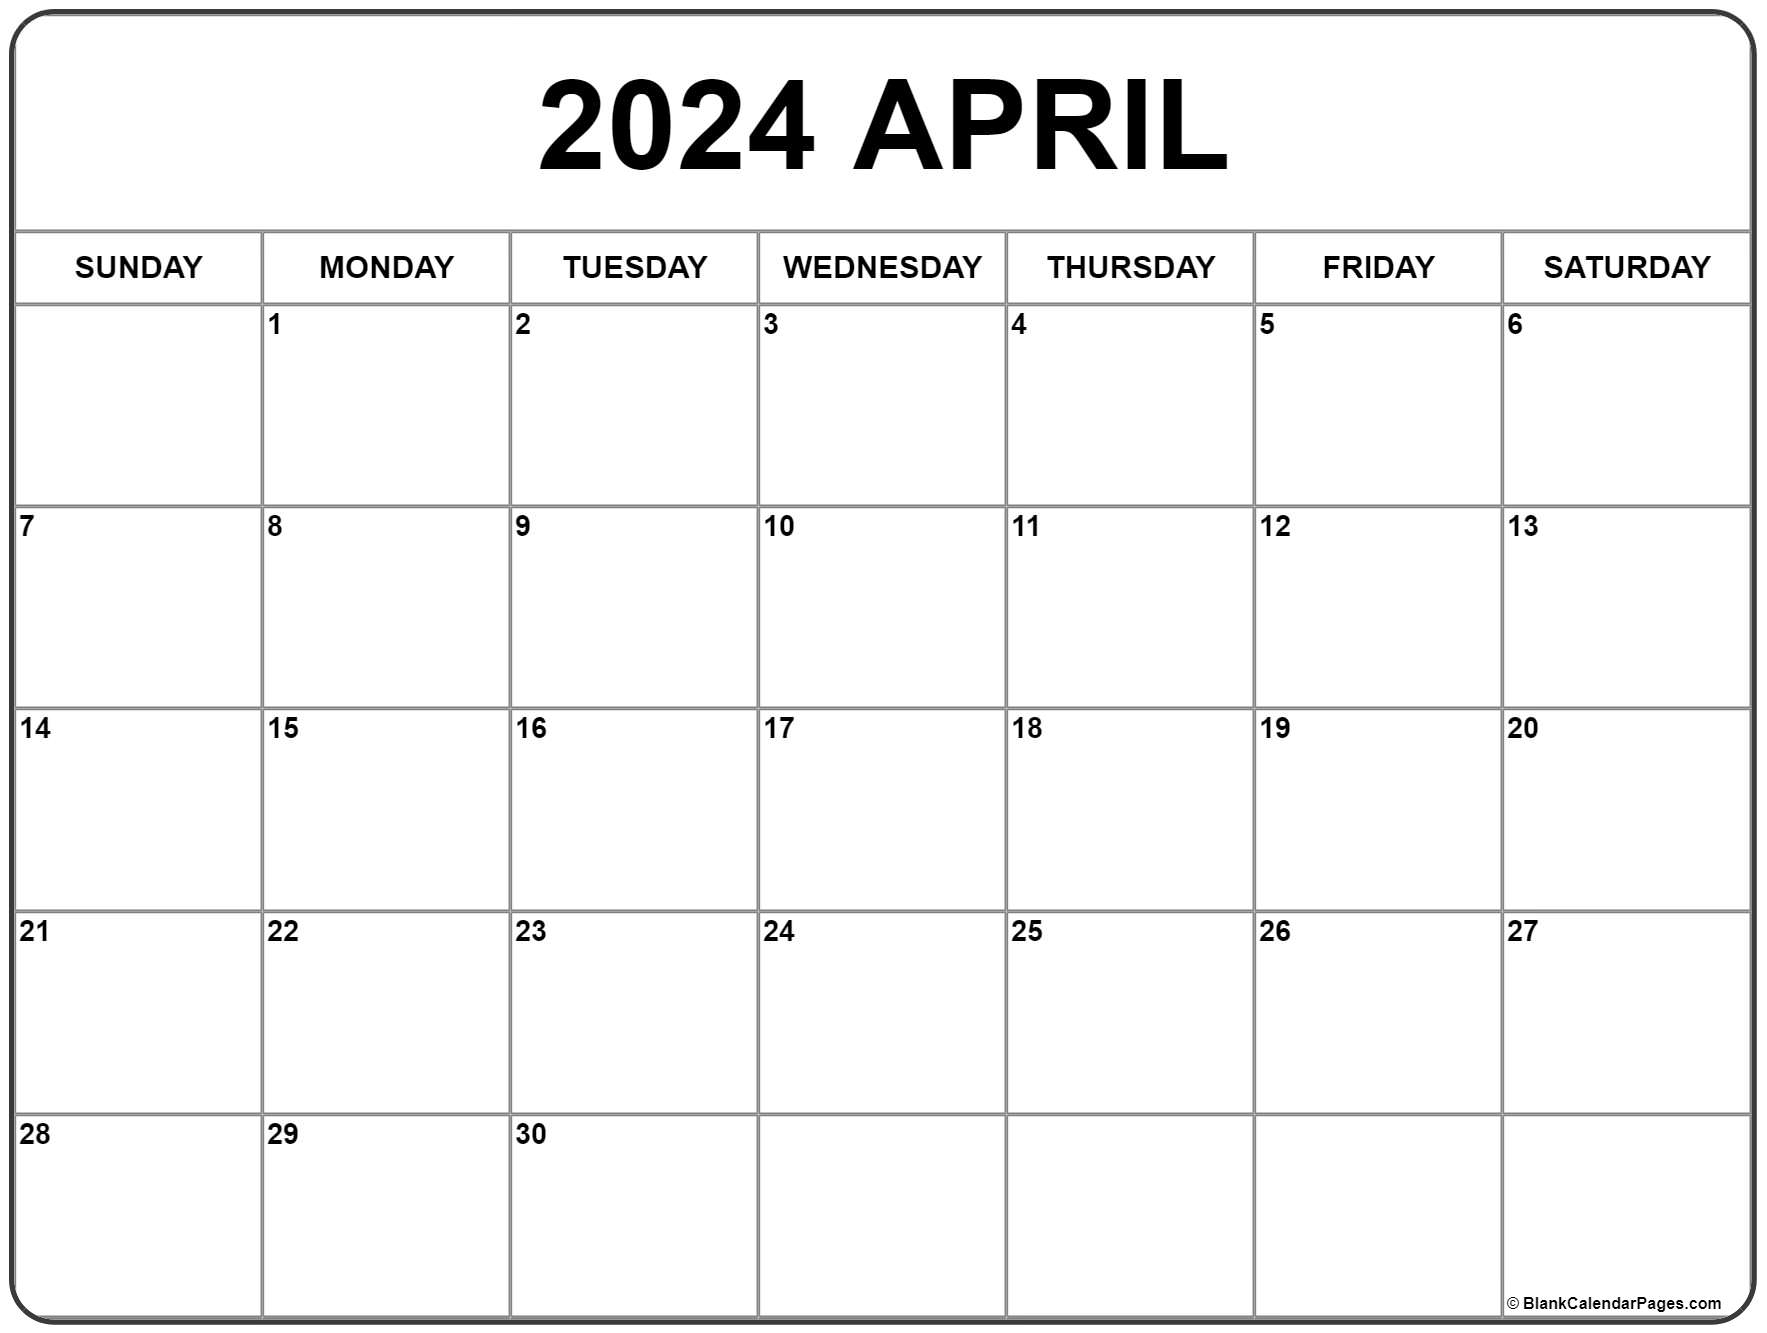 April 2024 Calendar | Free Printable Calendar for Free April Printable Calendar 2024